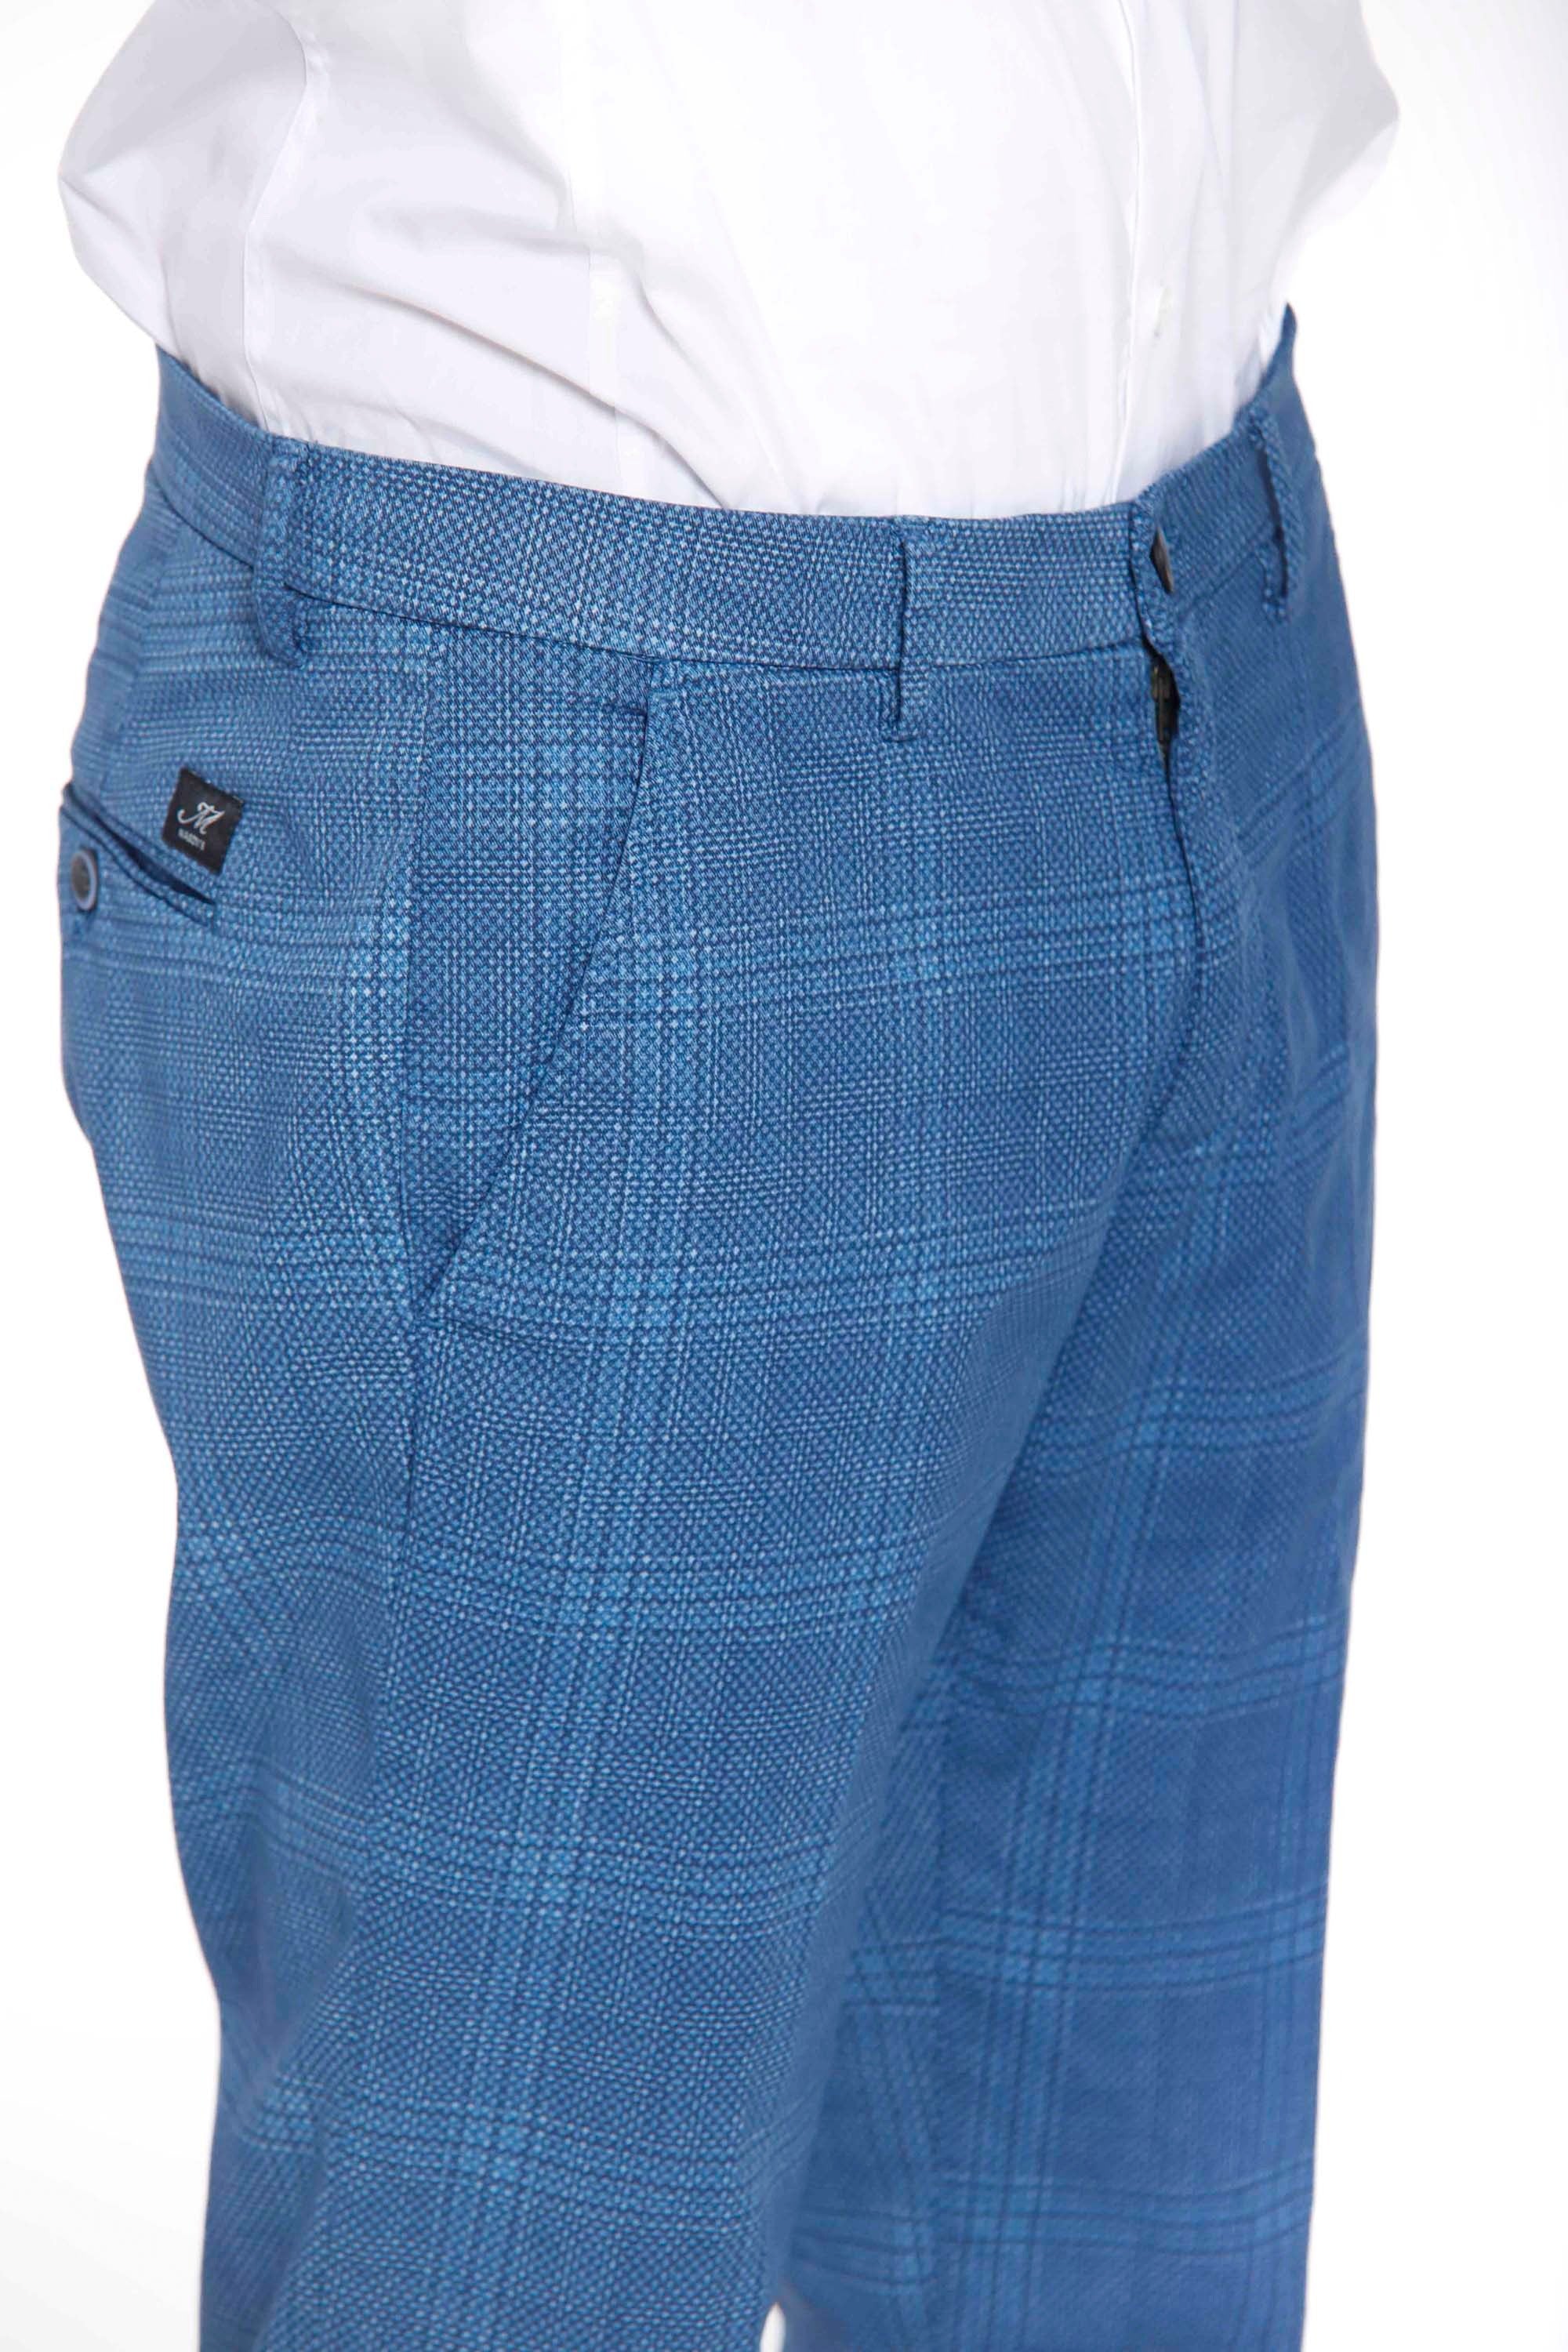 Torino Style Pantalon chino homme en twill de coton imprimé galles slim fit